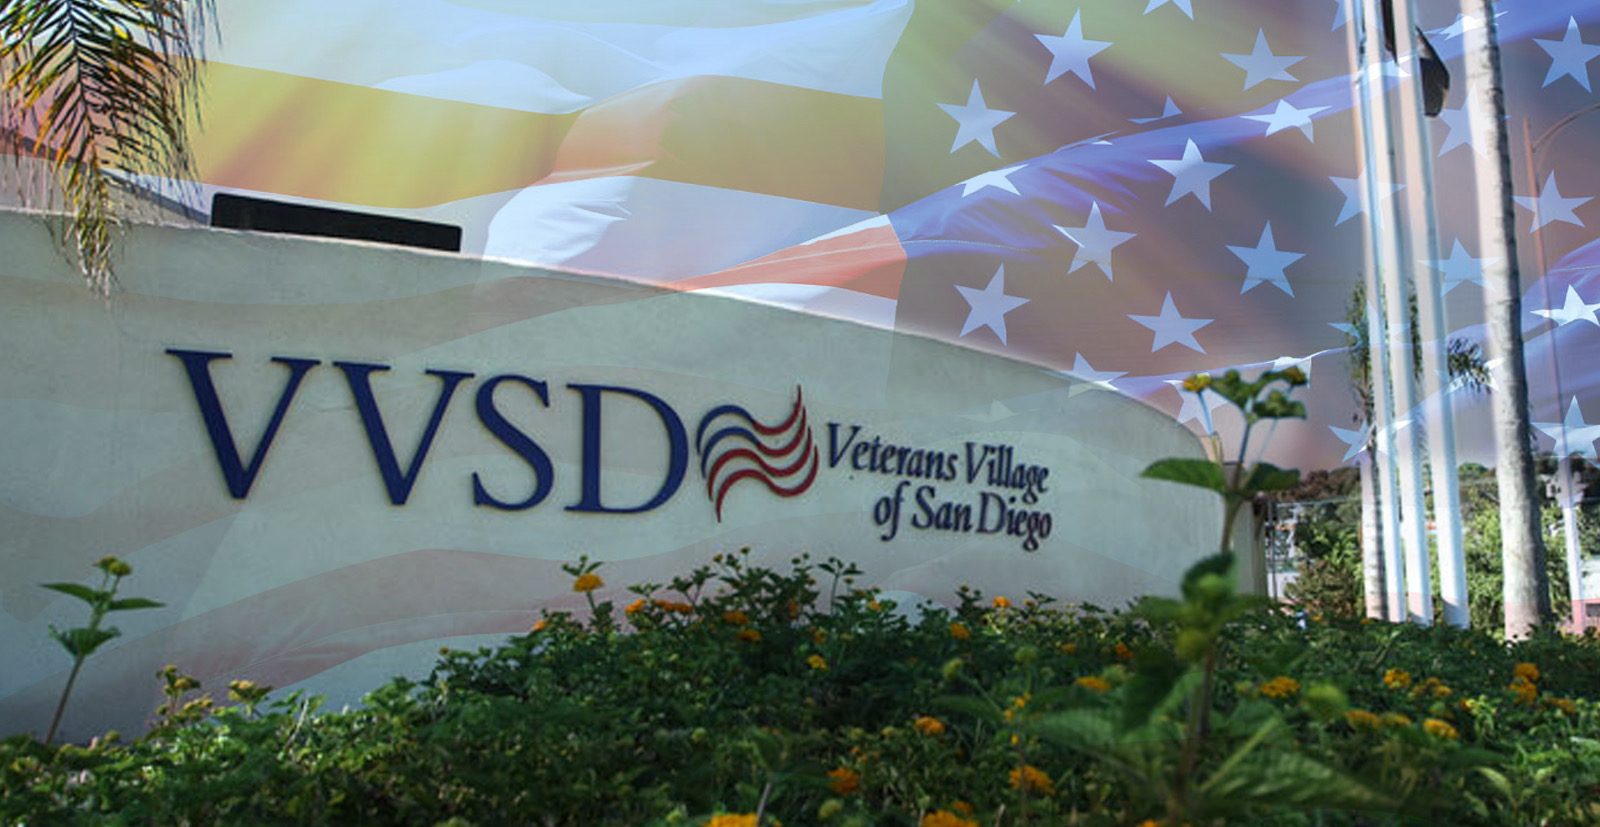 Veterans Village of San Diego